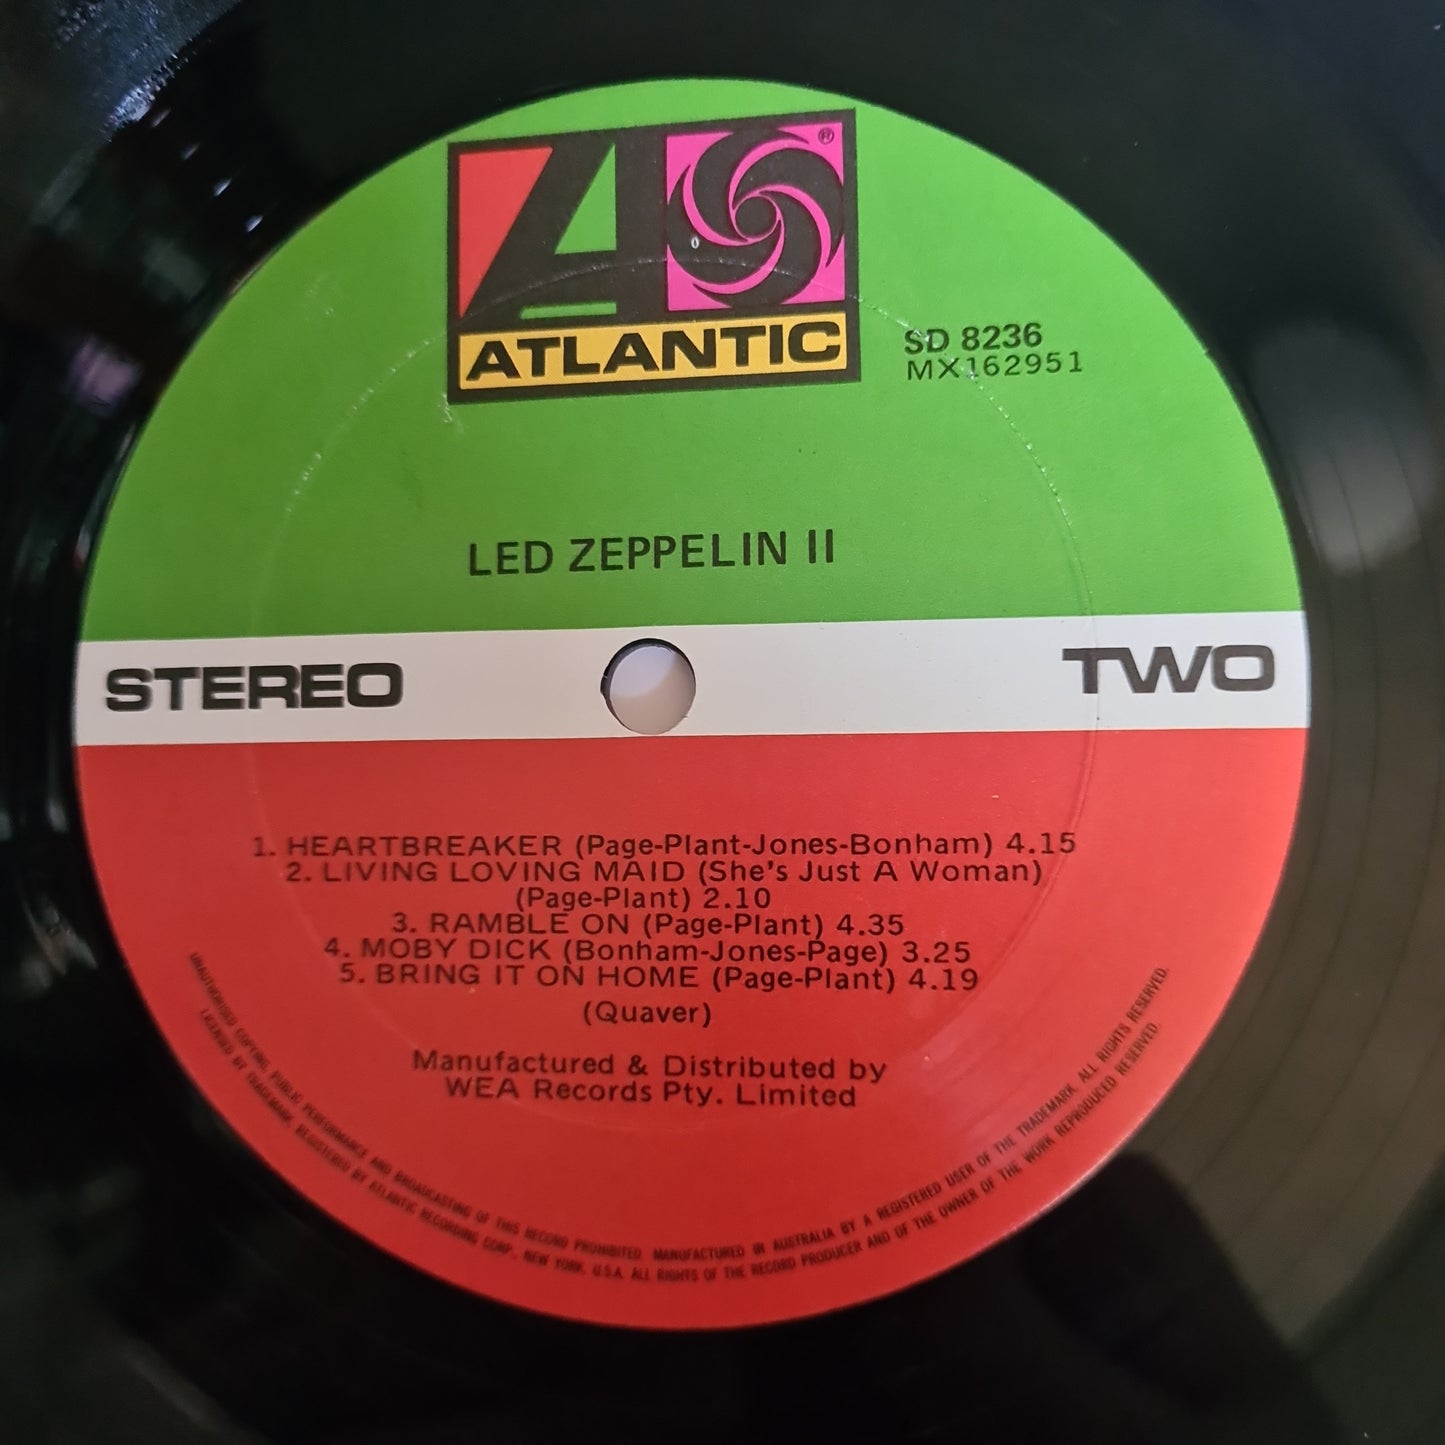 Led Zeppelin – Led Zeppelin 2 - 1969 (Gatefold) - Vinyl Record